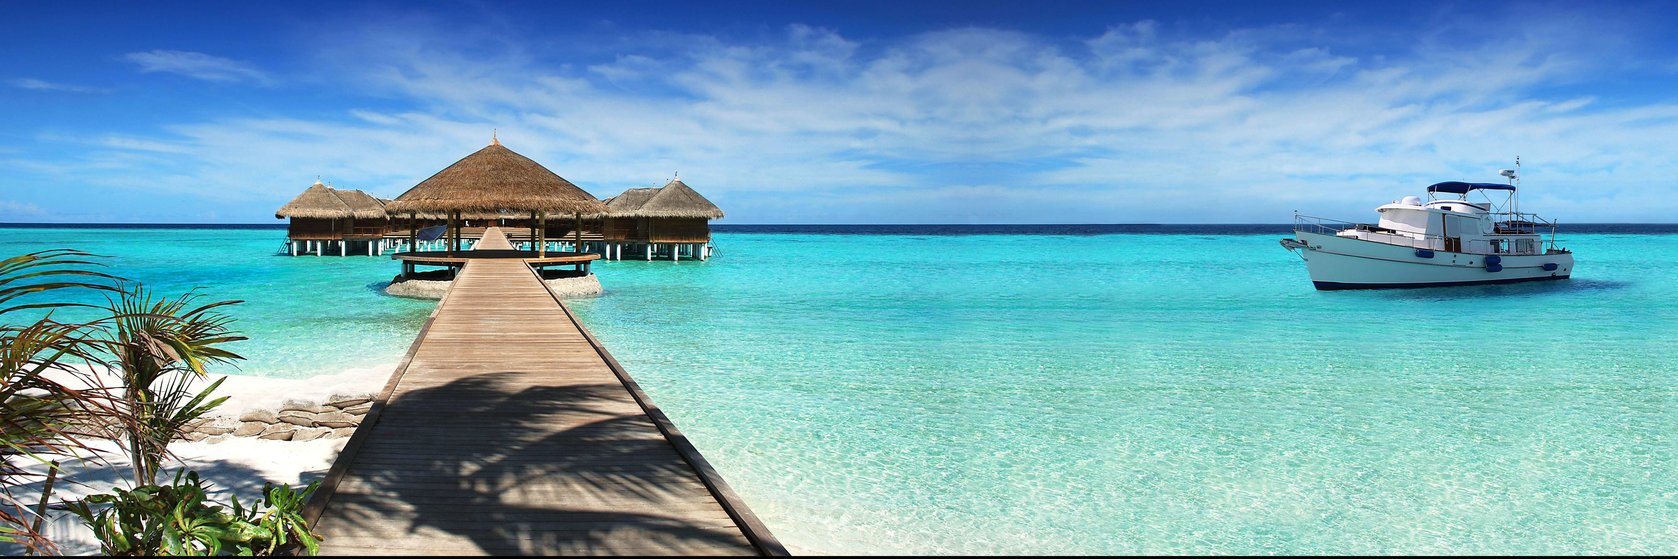 Kde výhodně nakoupit na Maledivách